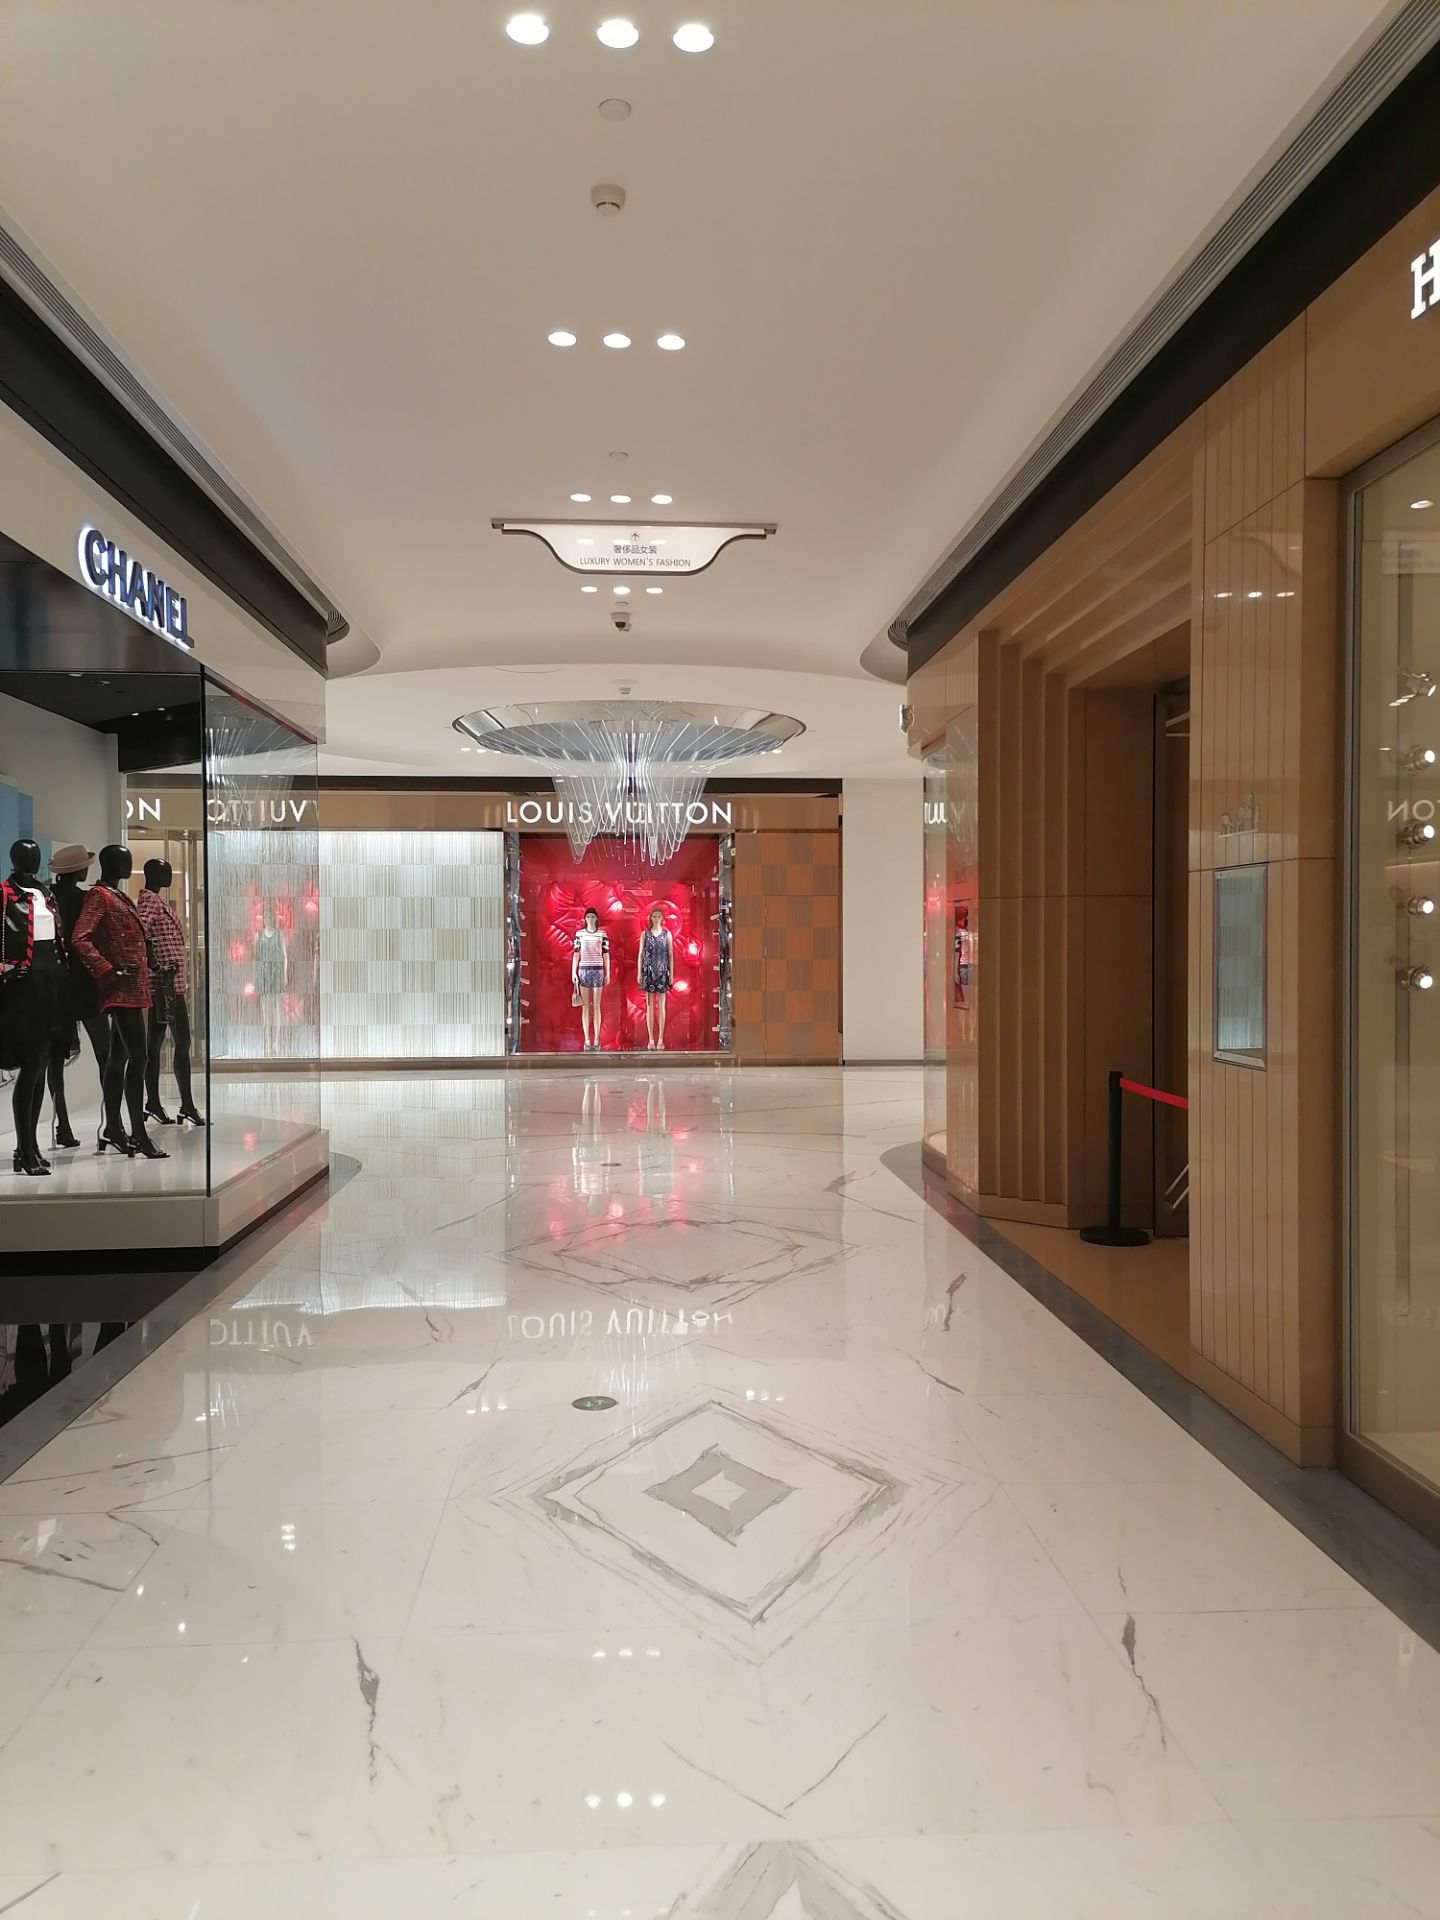 【携程攻略】西安skp购物,购物中心规模很大,内部环境整洁舒适,装饰